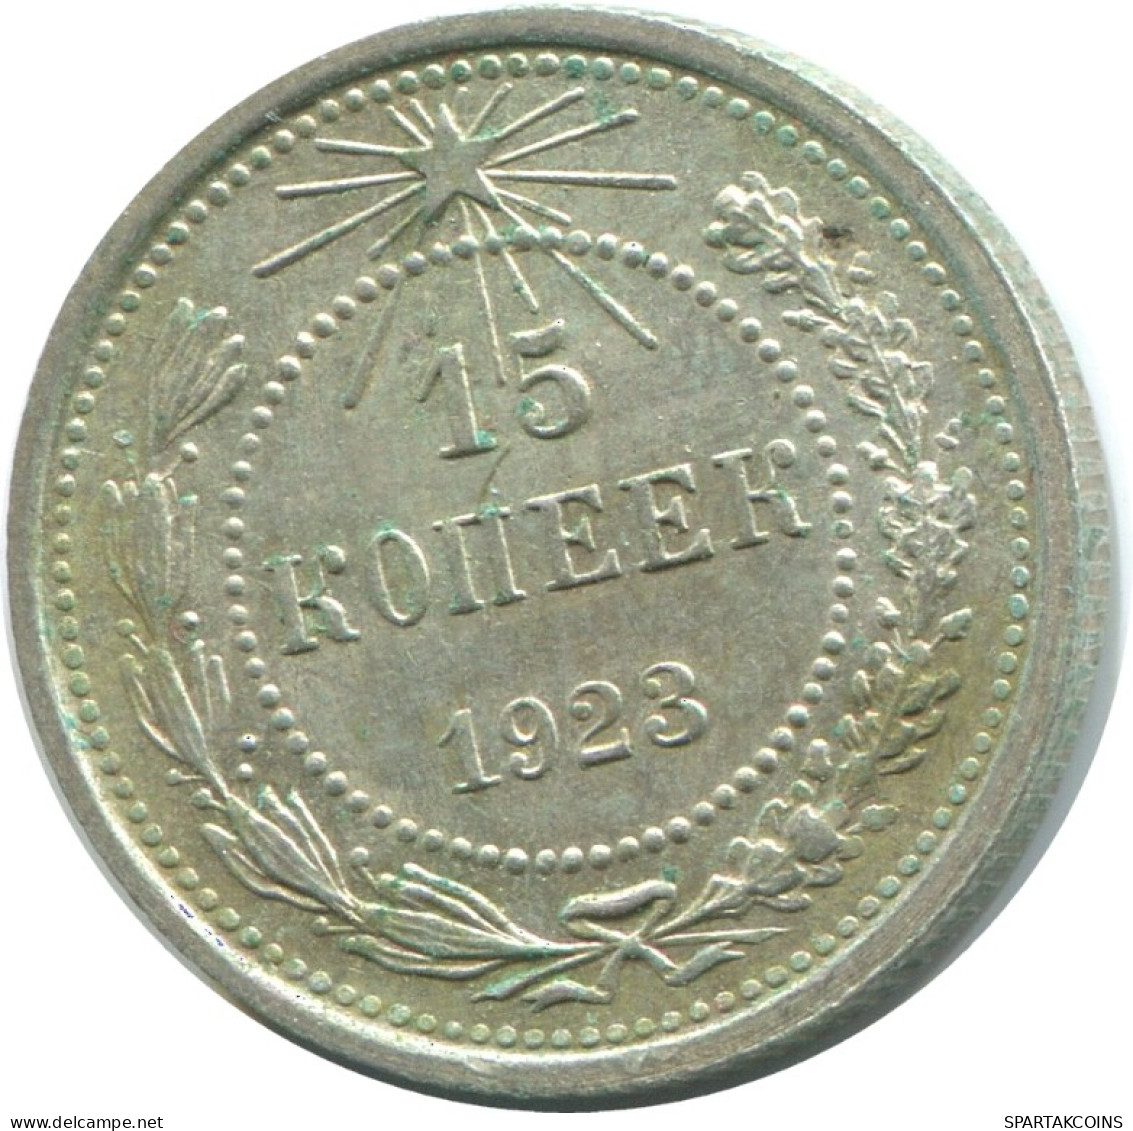 15 KOPEKS 1923 RUSSIA RSFSR SILVER Coin HIGH GRADE #AF162.4.U.A - Russland